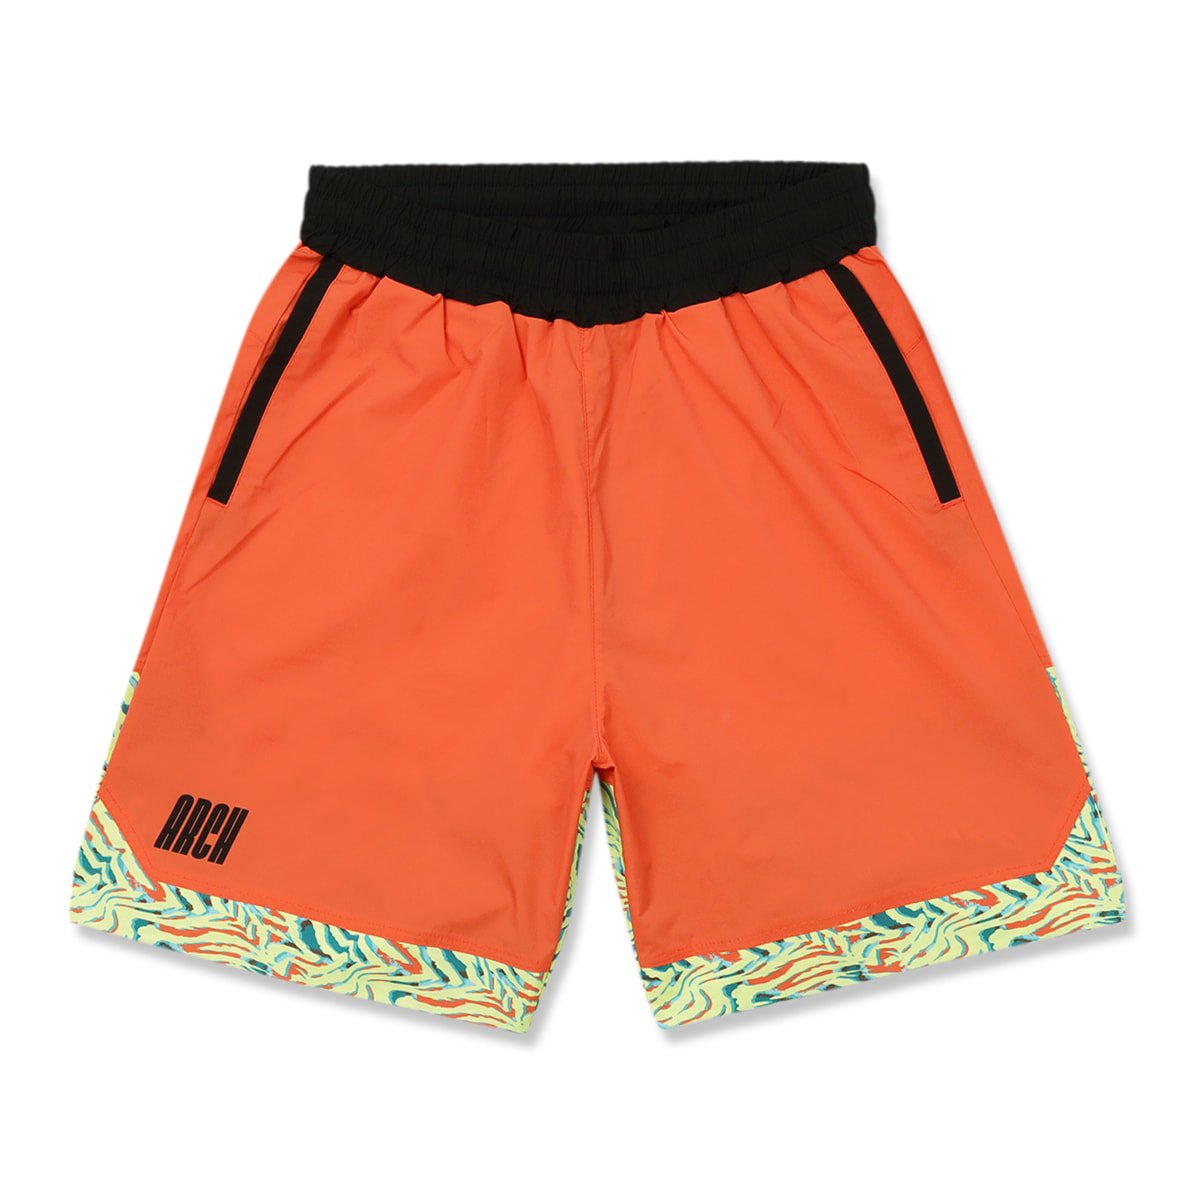 zebra section shorts【orange】